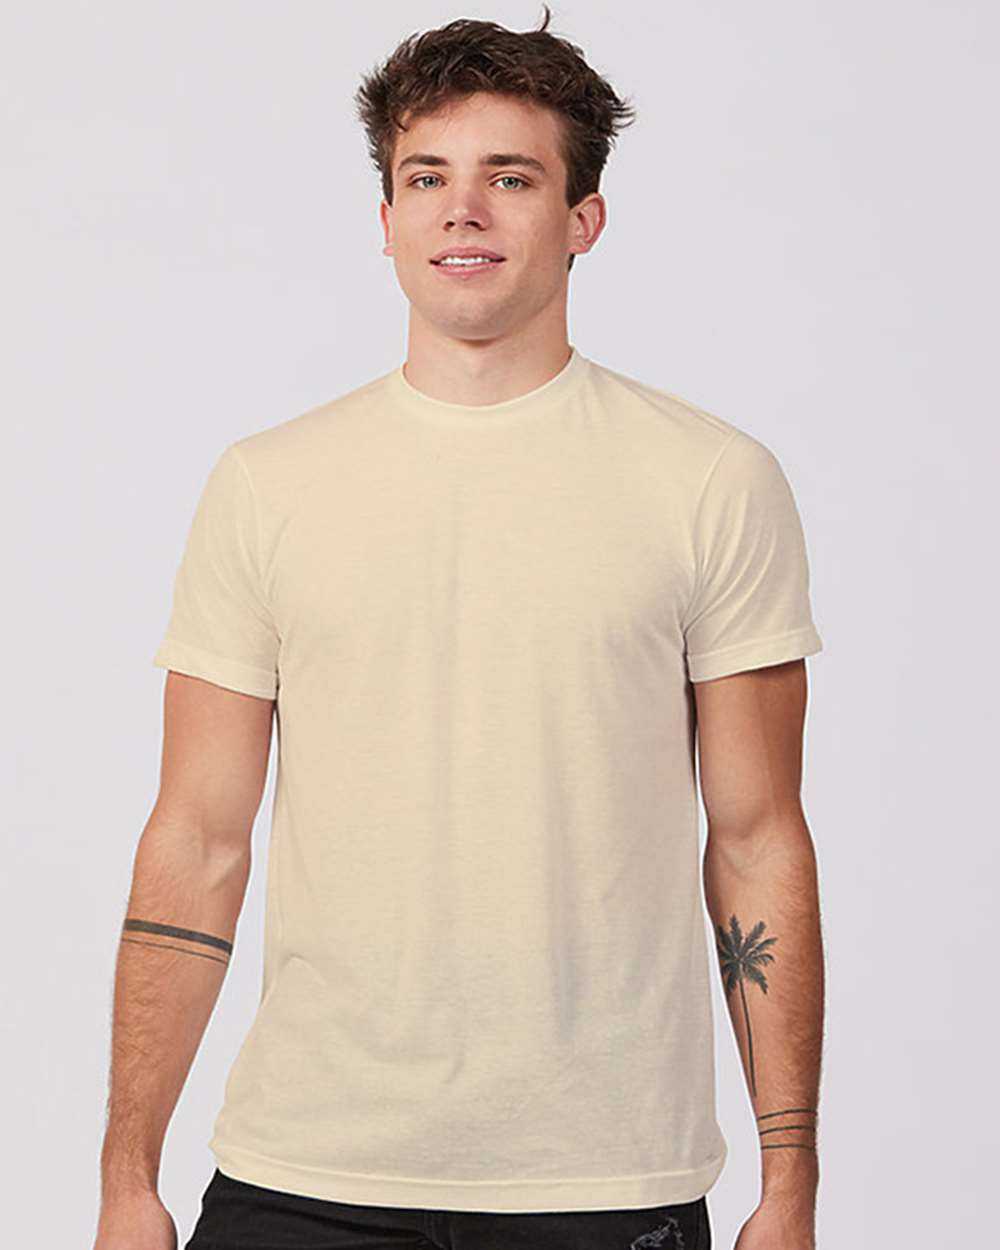 Tultex 502 Premium Cotton T-Shirt - Buttercream - HIT a Double